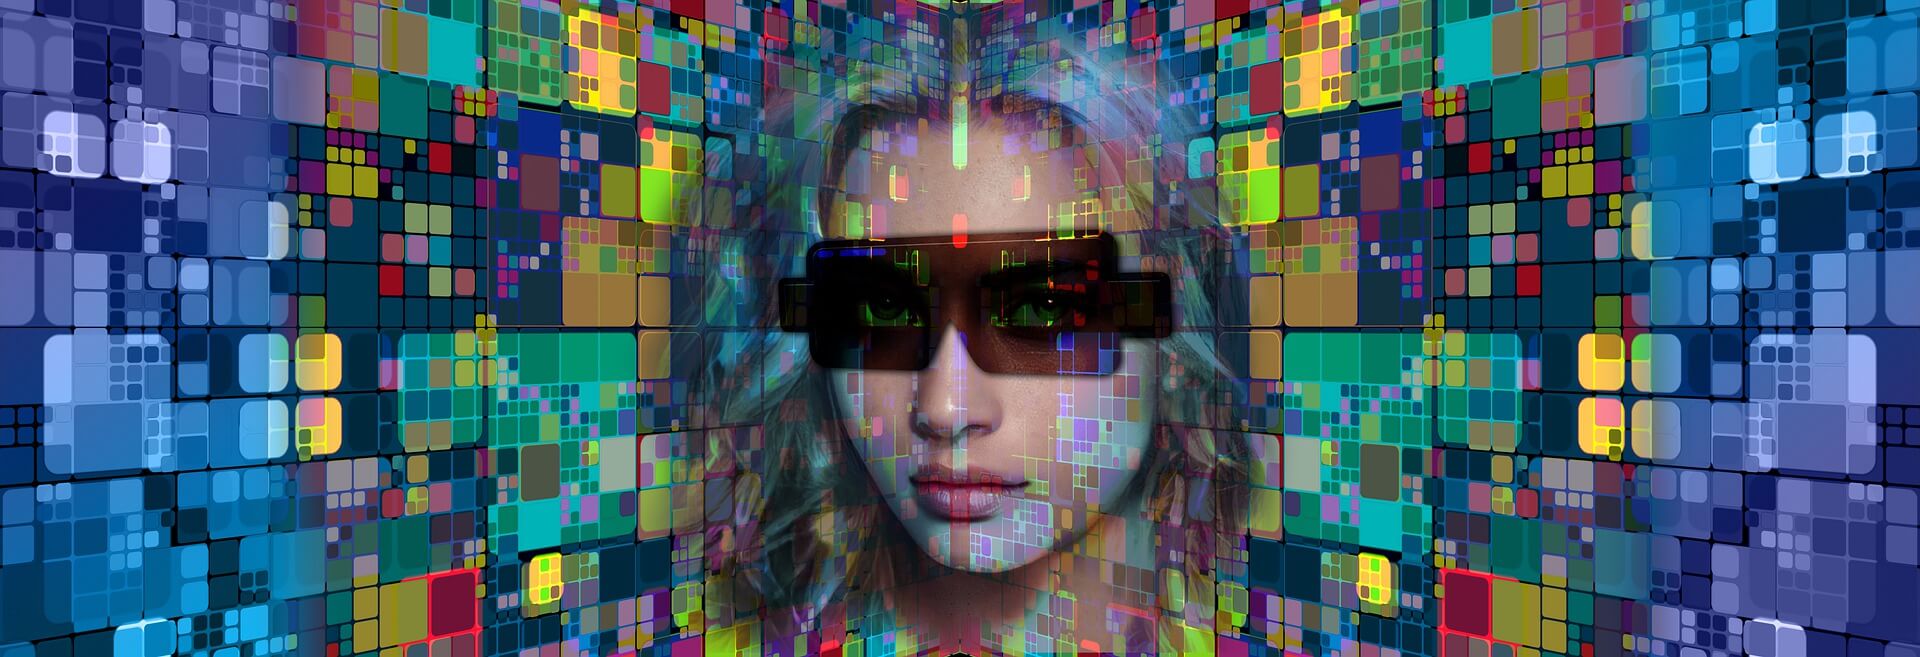 这是一张数字艺术图片，展示了一位佩戴墨镜的女性面孔与多彩像素化背景融合的效果。